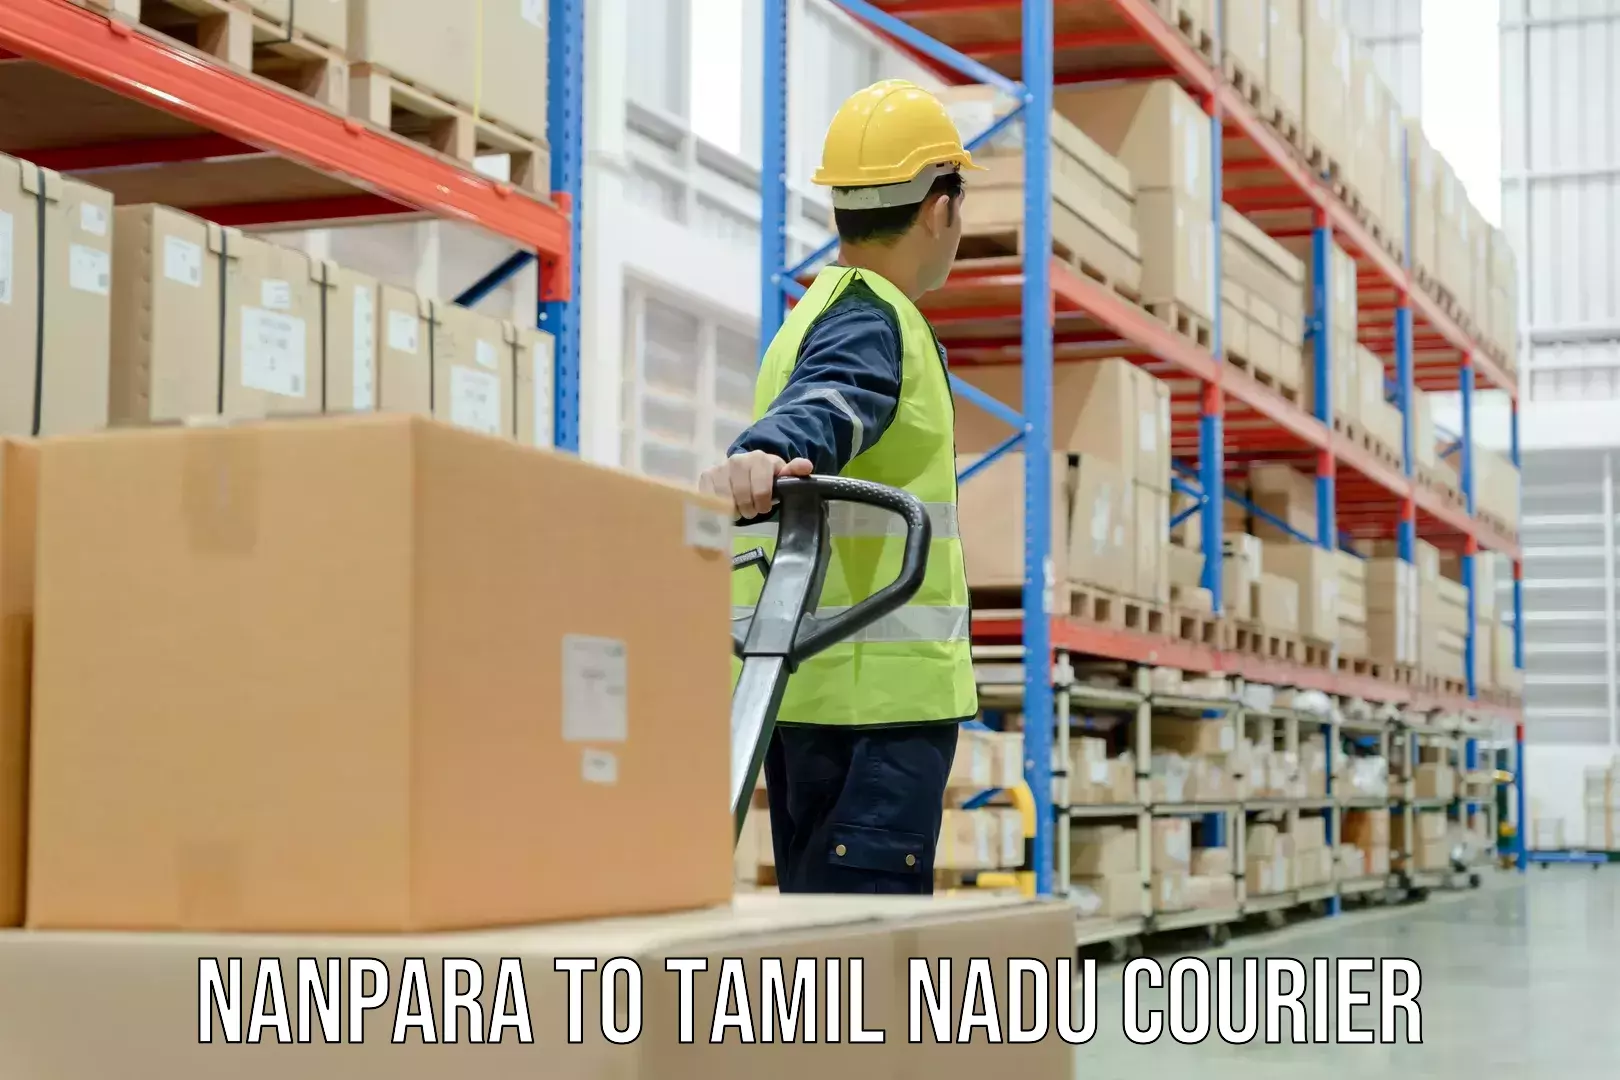 Multi-city courier Nanpara to Tamil Nadu